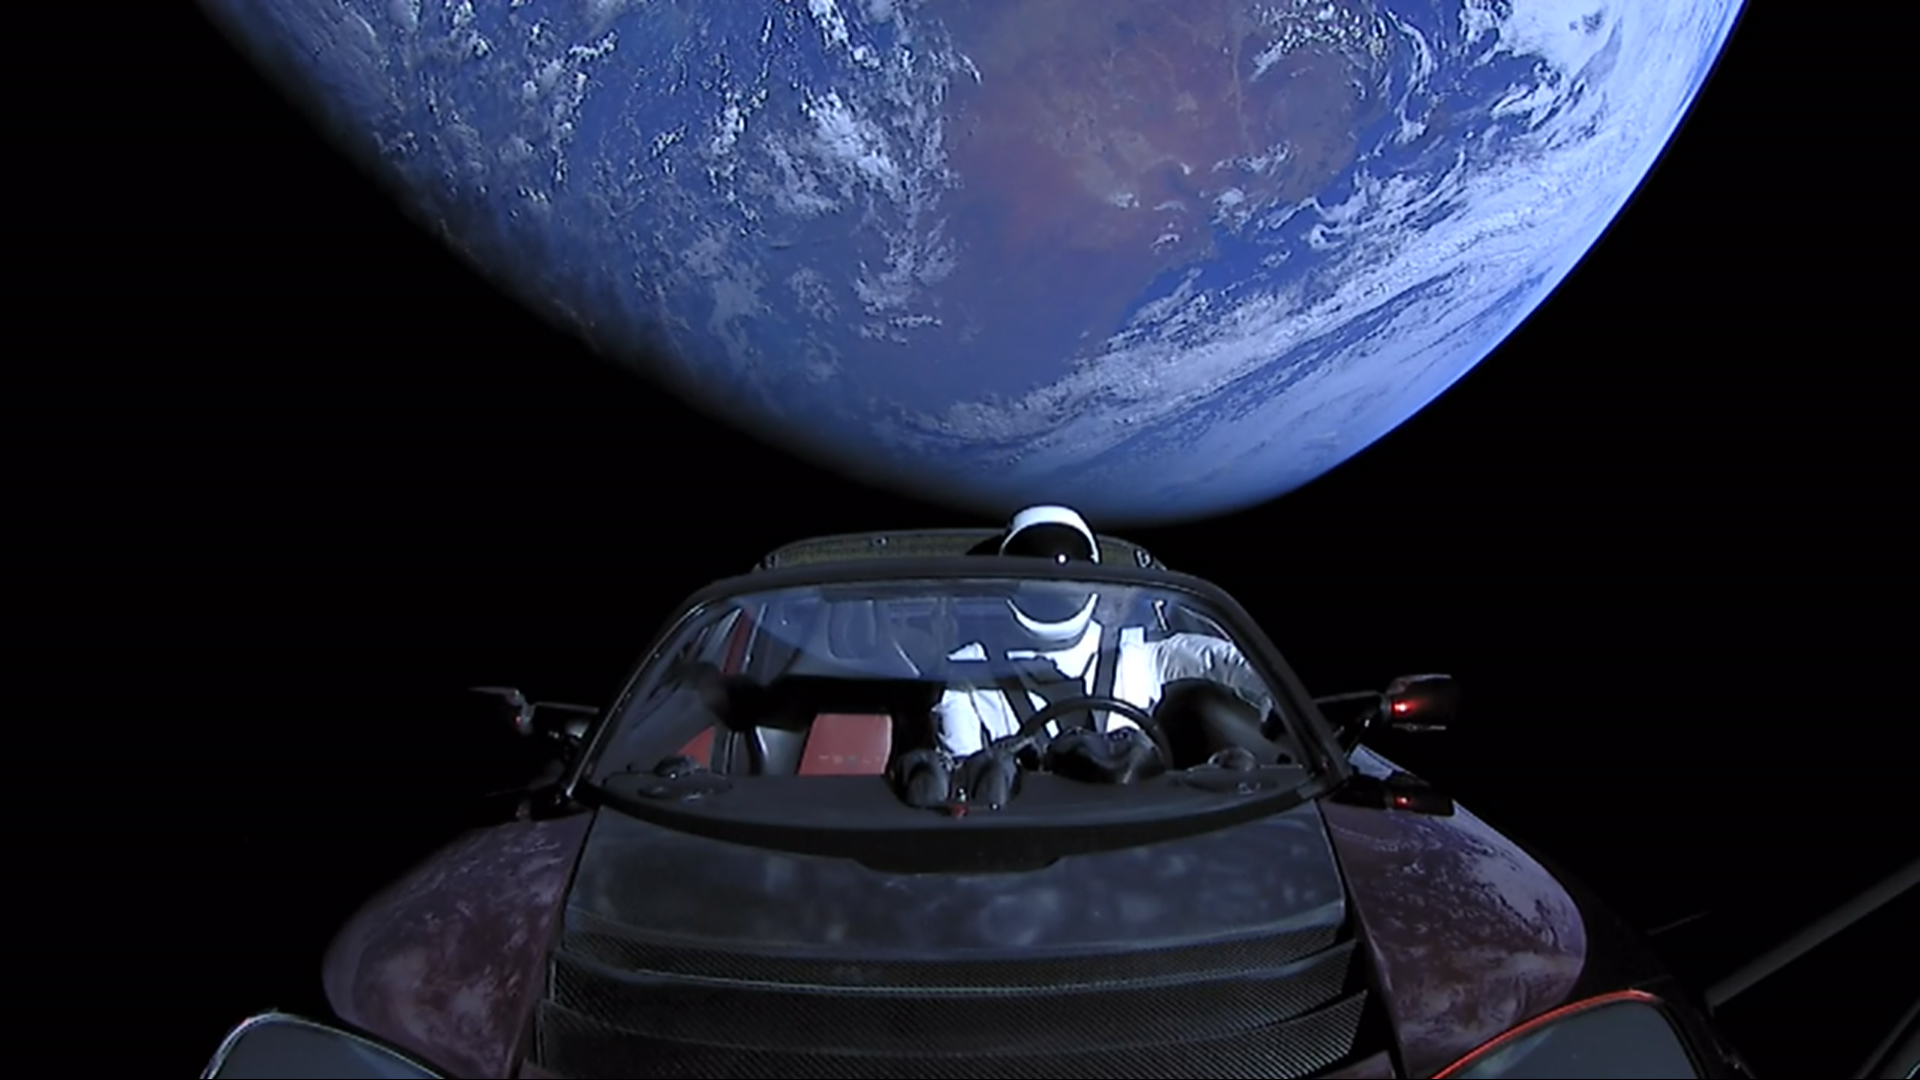 Tesla Roadster літає в космосі 5 років - він подолав понад 4 млрд км, 3,5 раза облетів навколо Сонця і зараз перебуває на орбіті Марса